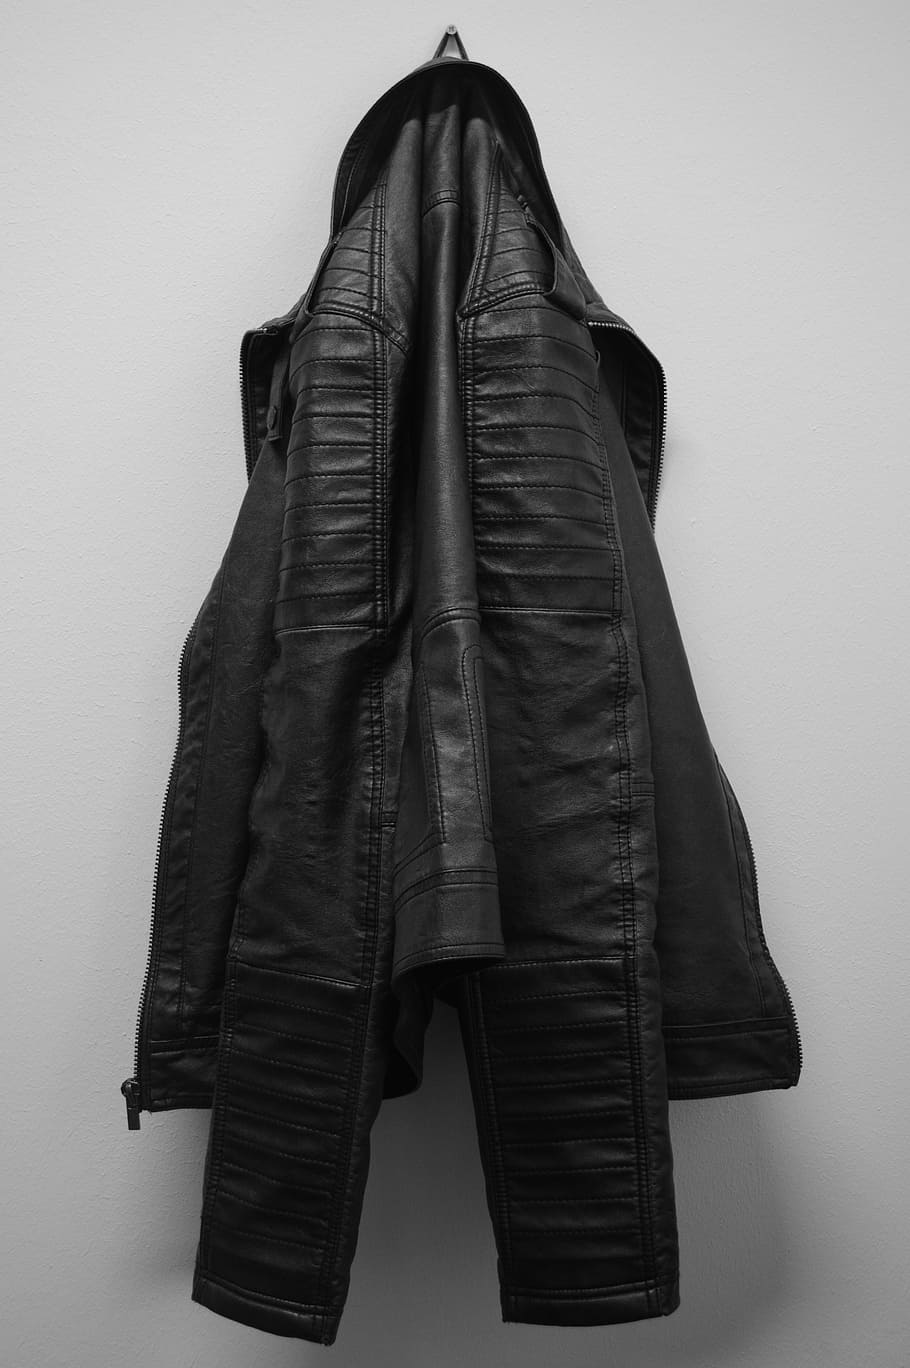 black, leather jacket, hanging, white, wall, jacket, leather coat, clothing, coat hanger, black white